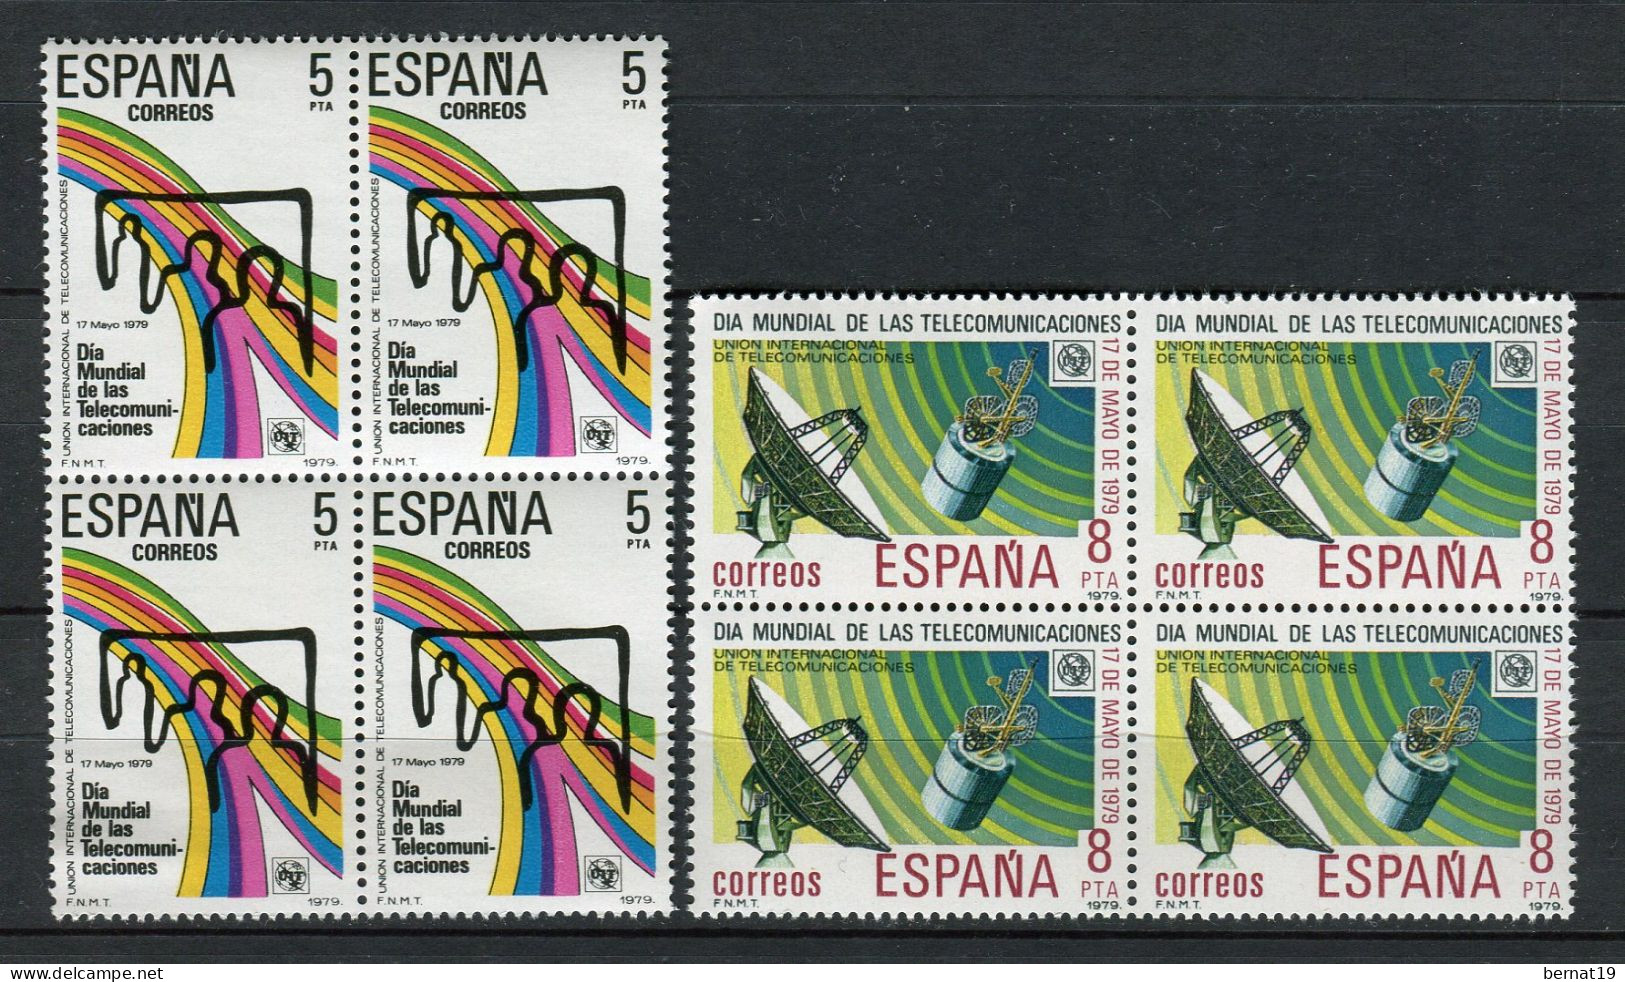 España 1979 completo x 4 (en bloques de 4) ** MNH.